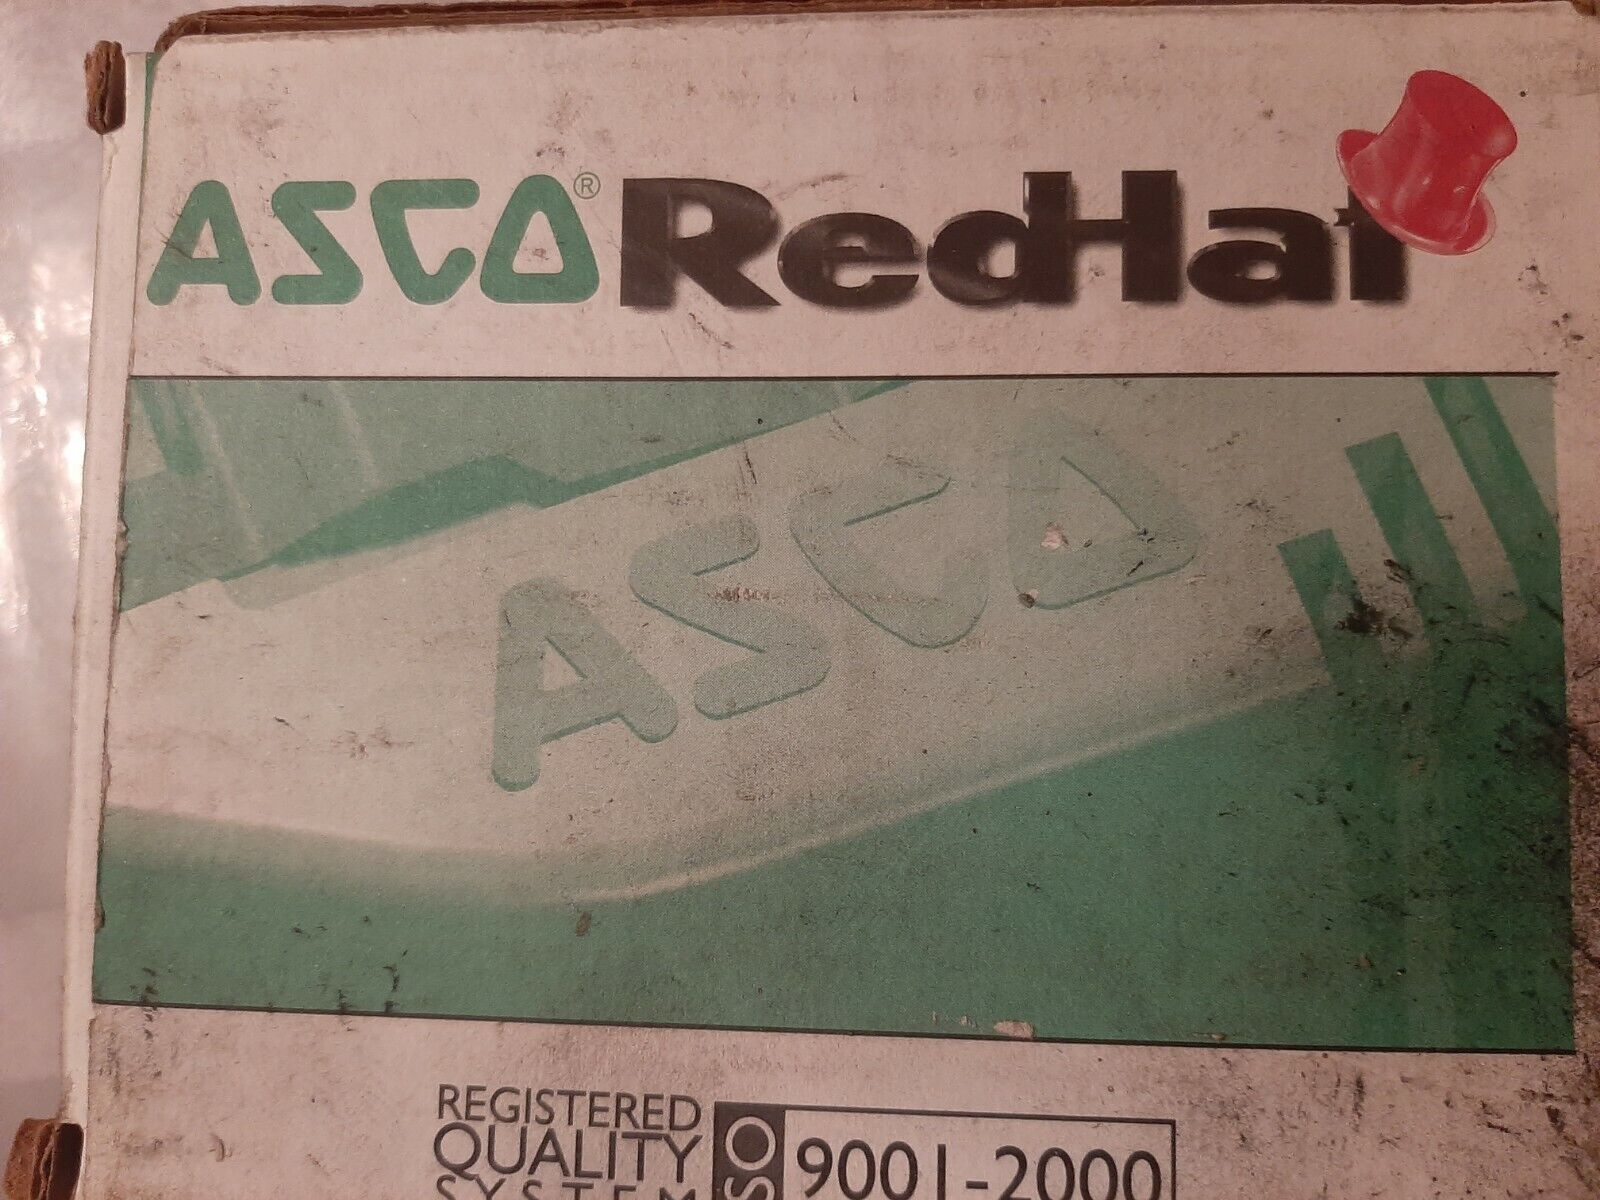 Asco/Red Hat P210C093 